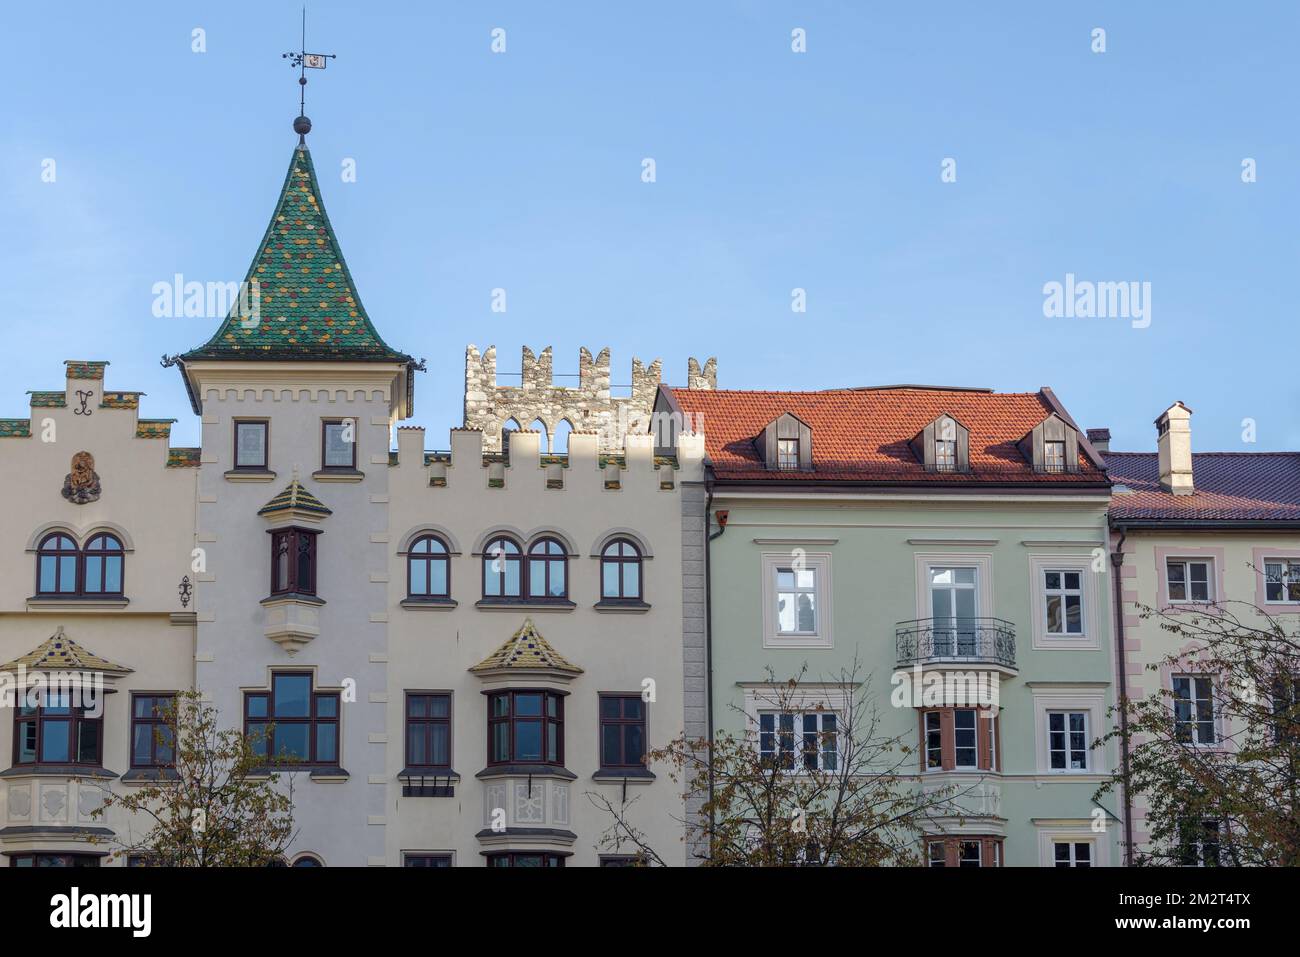 Fassaden von historischen Häusern in der Altstadt von Brixen, der Autonomen Provinz Bozen, Trentino-Südtirol, Norditalien Stockfoto